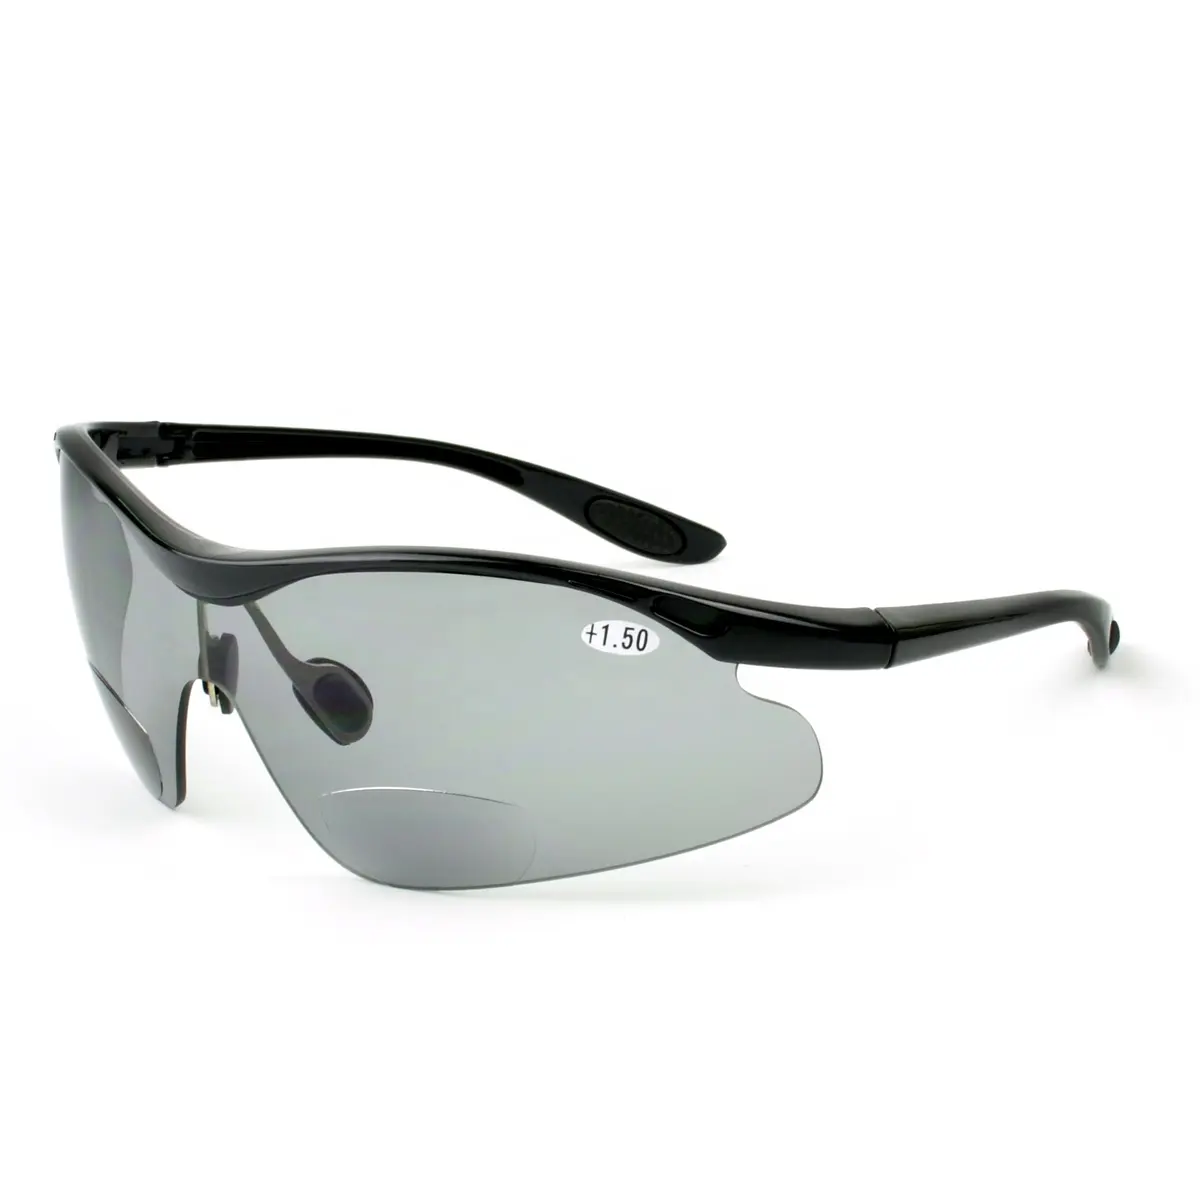 Venta al por mayor industrial personalizado Anti UV trabajo gafas de protección solar al aire libre gafas de seguridad bifocales